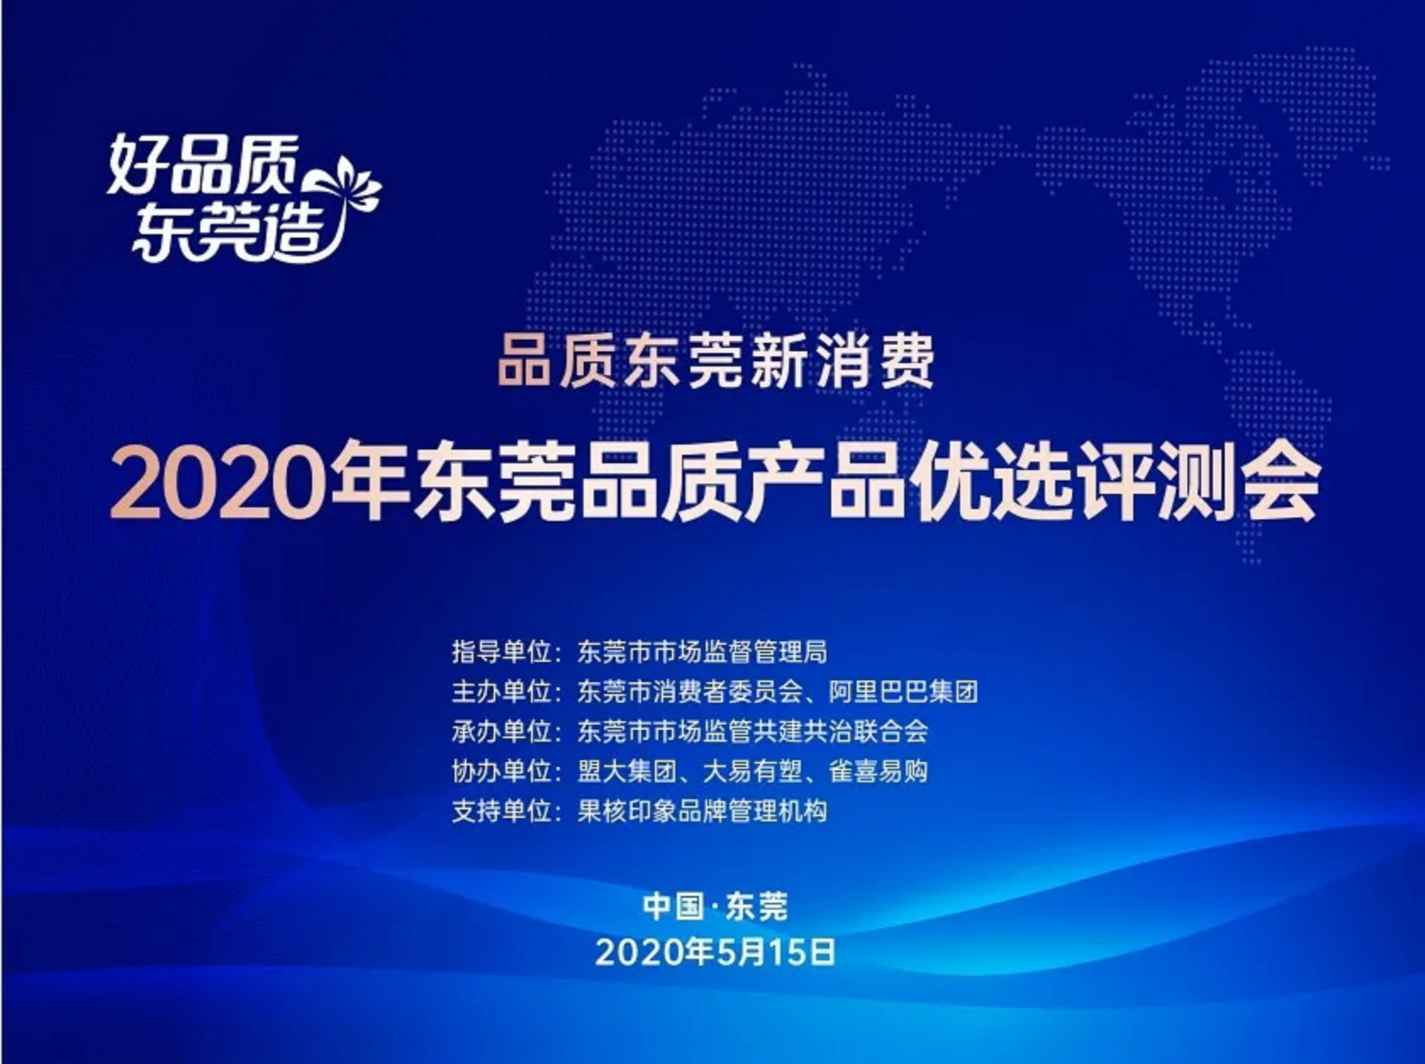 熱烈祝賀QCY真無(wú)線(xiàn)藍牙耳機被評選為“2020年?yáng)|莞優(yōu)選品質(zhì)產(chǎn)品